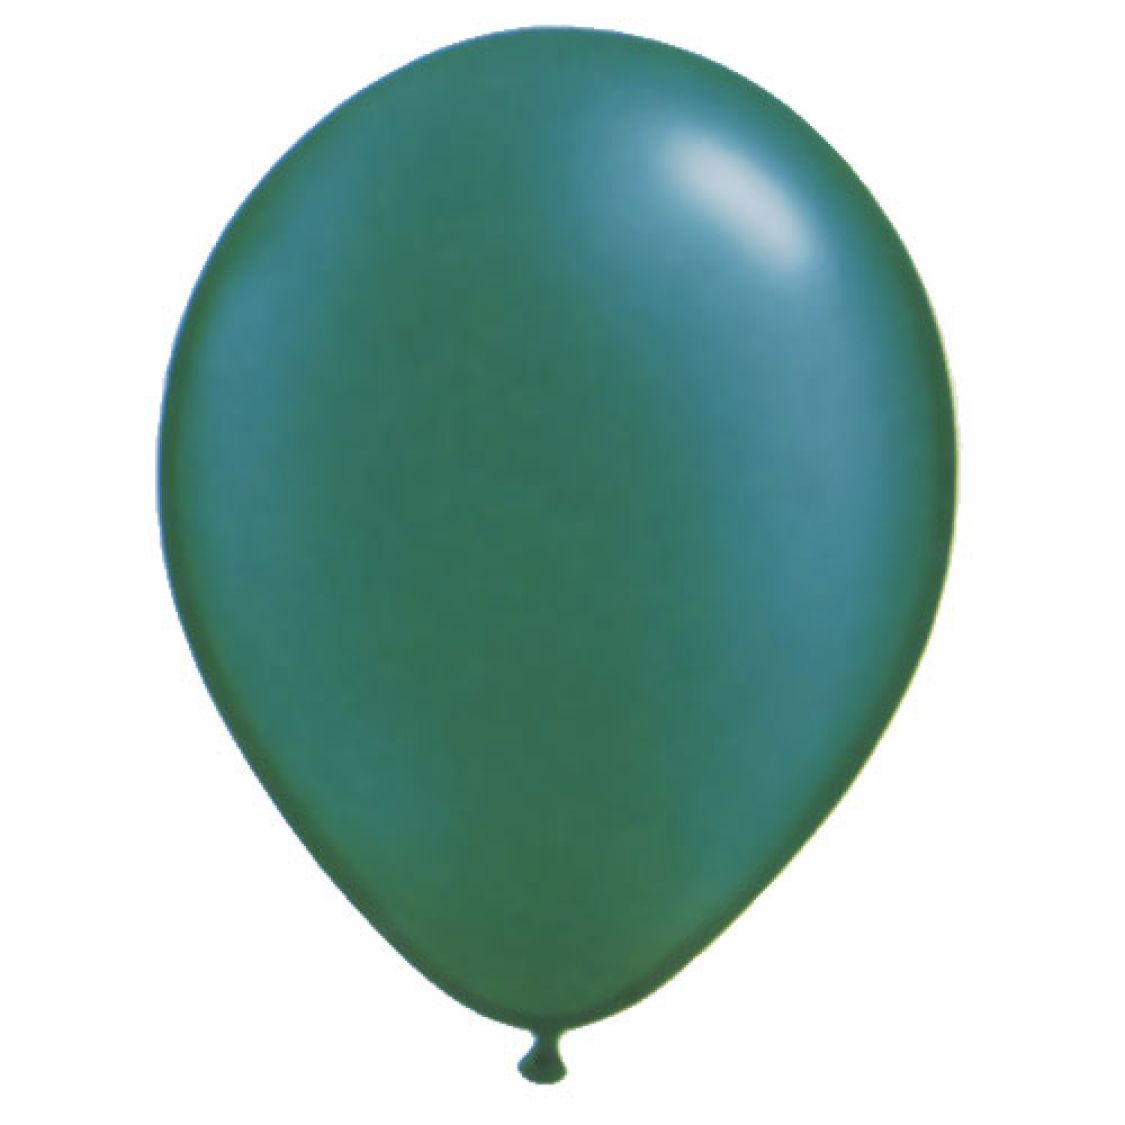 Ballon Vert emeraude Perlé (Emerald Green)